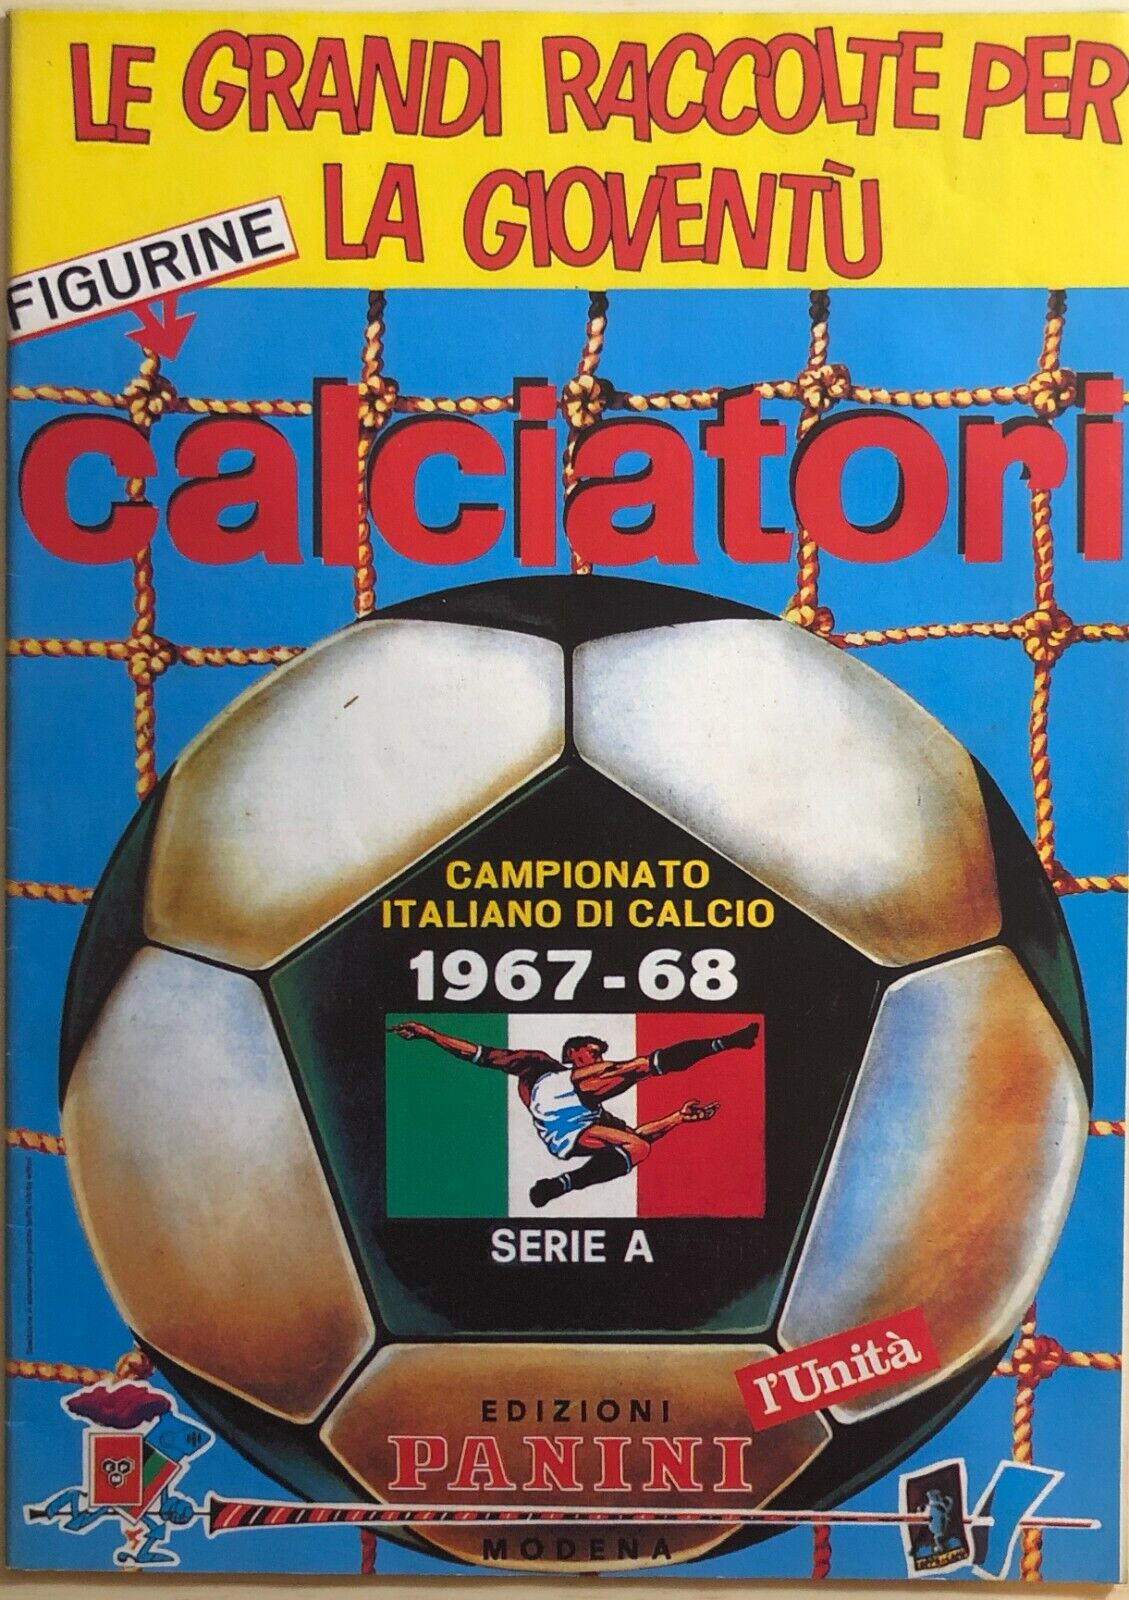 Ristampa album Calciatori Panini Serie A 1967-68